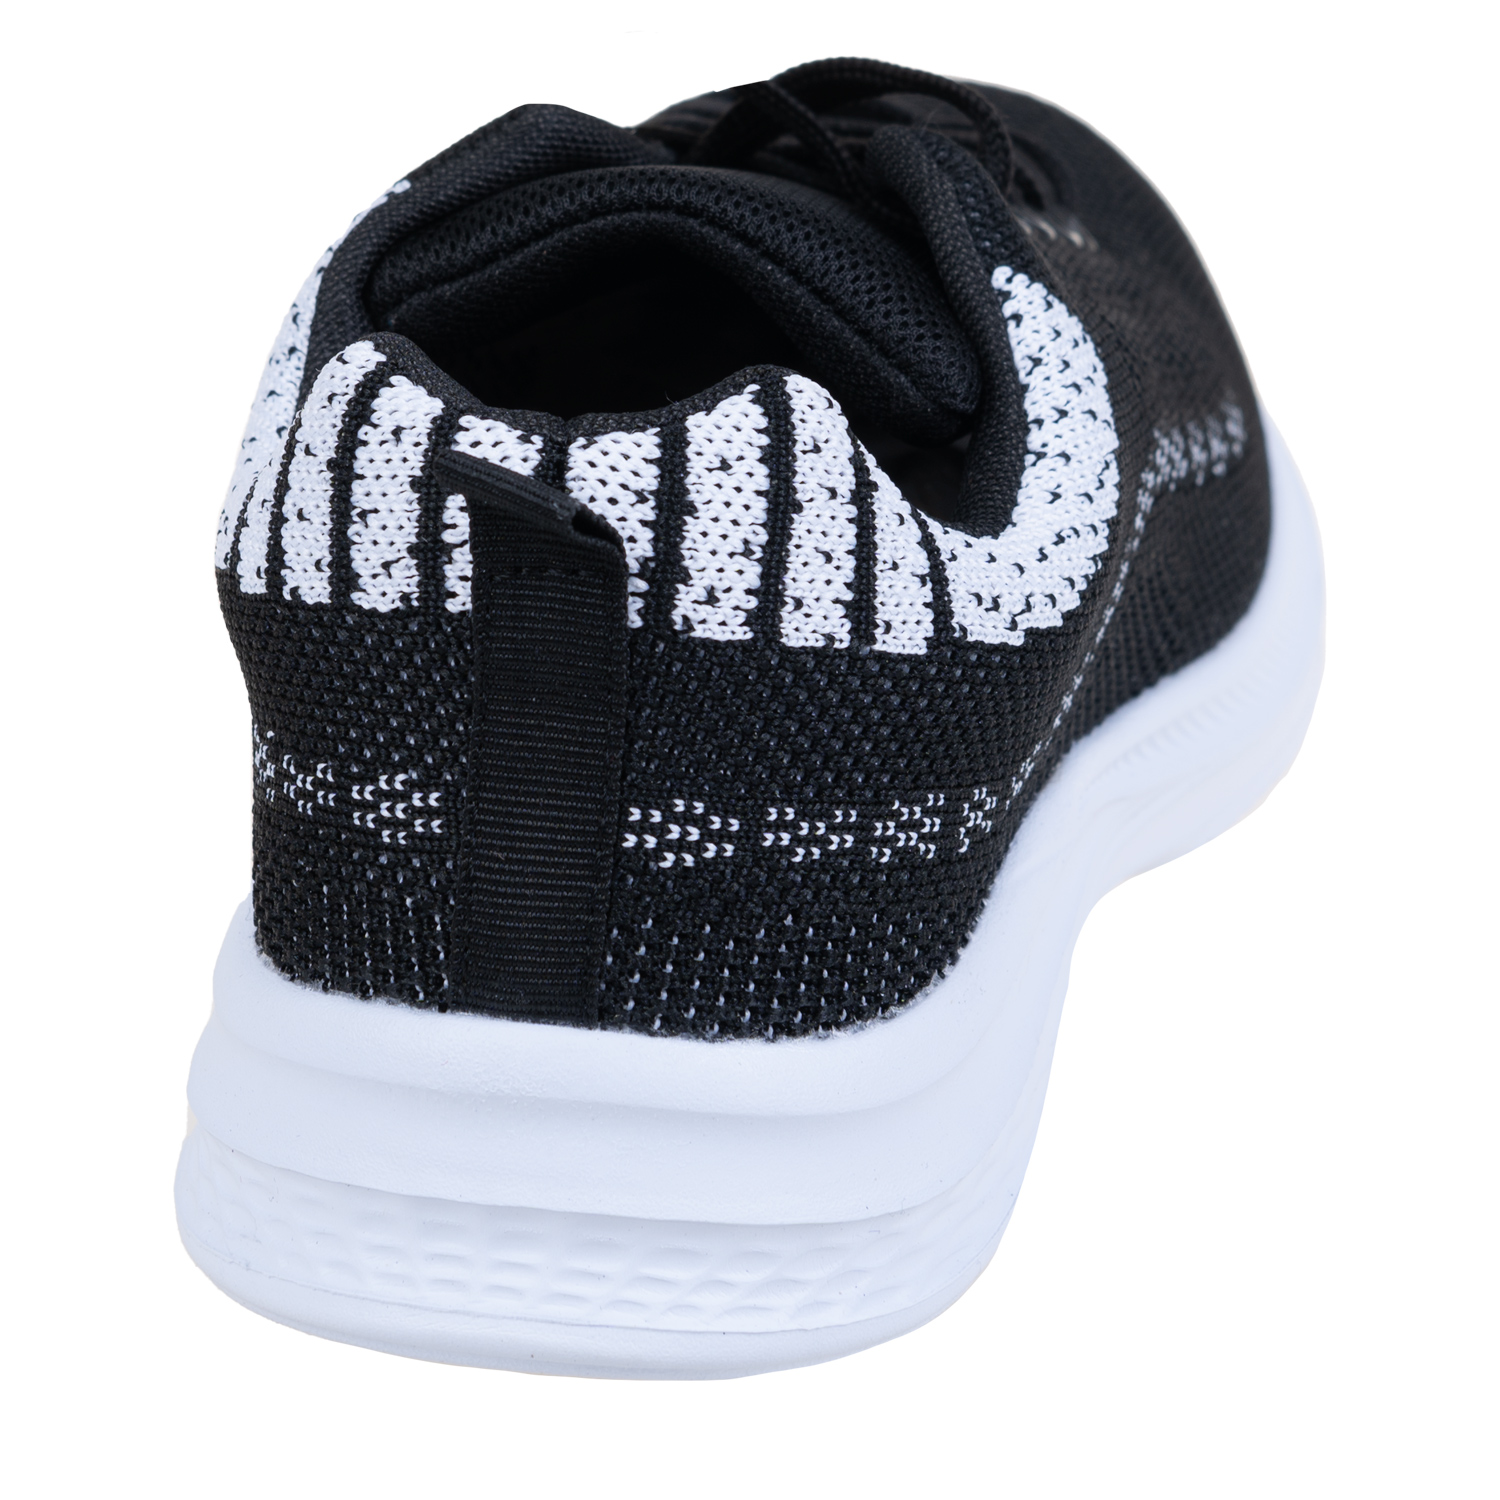 Lightweight mesh sports shoes - Black. Colour: black. Size: 6